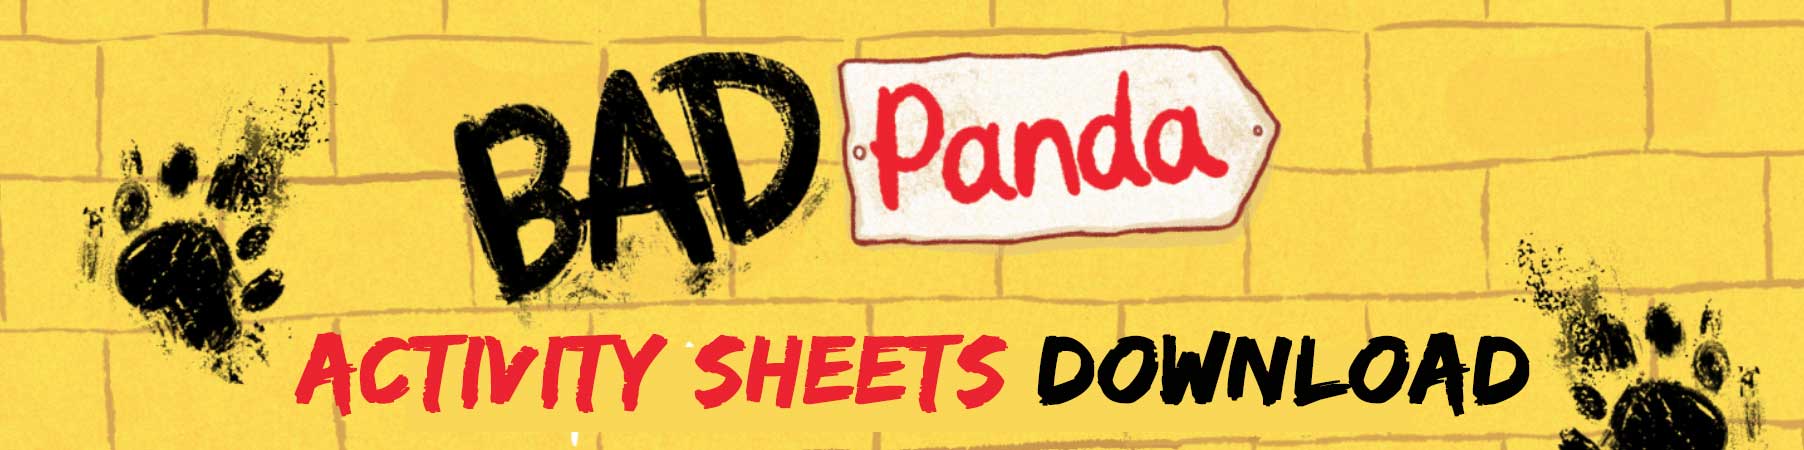 Bad Panda Activity Sheet Download